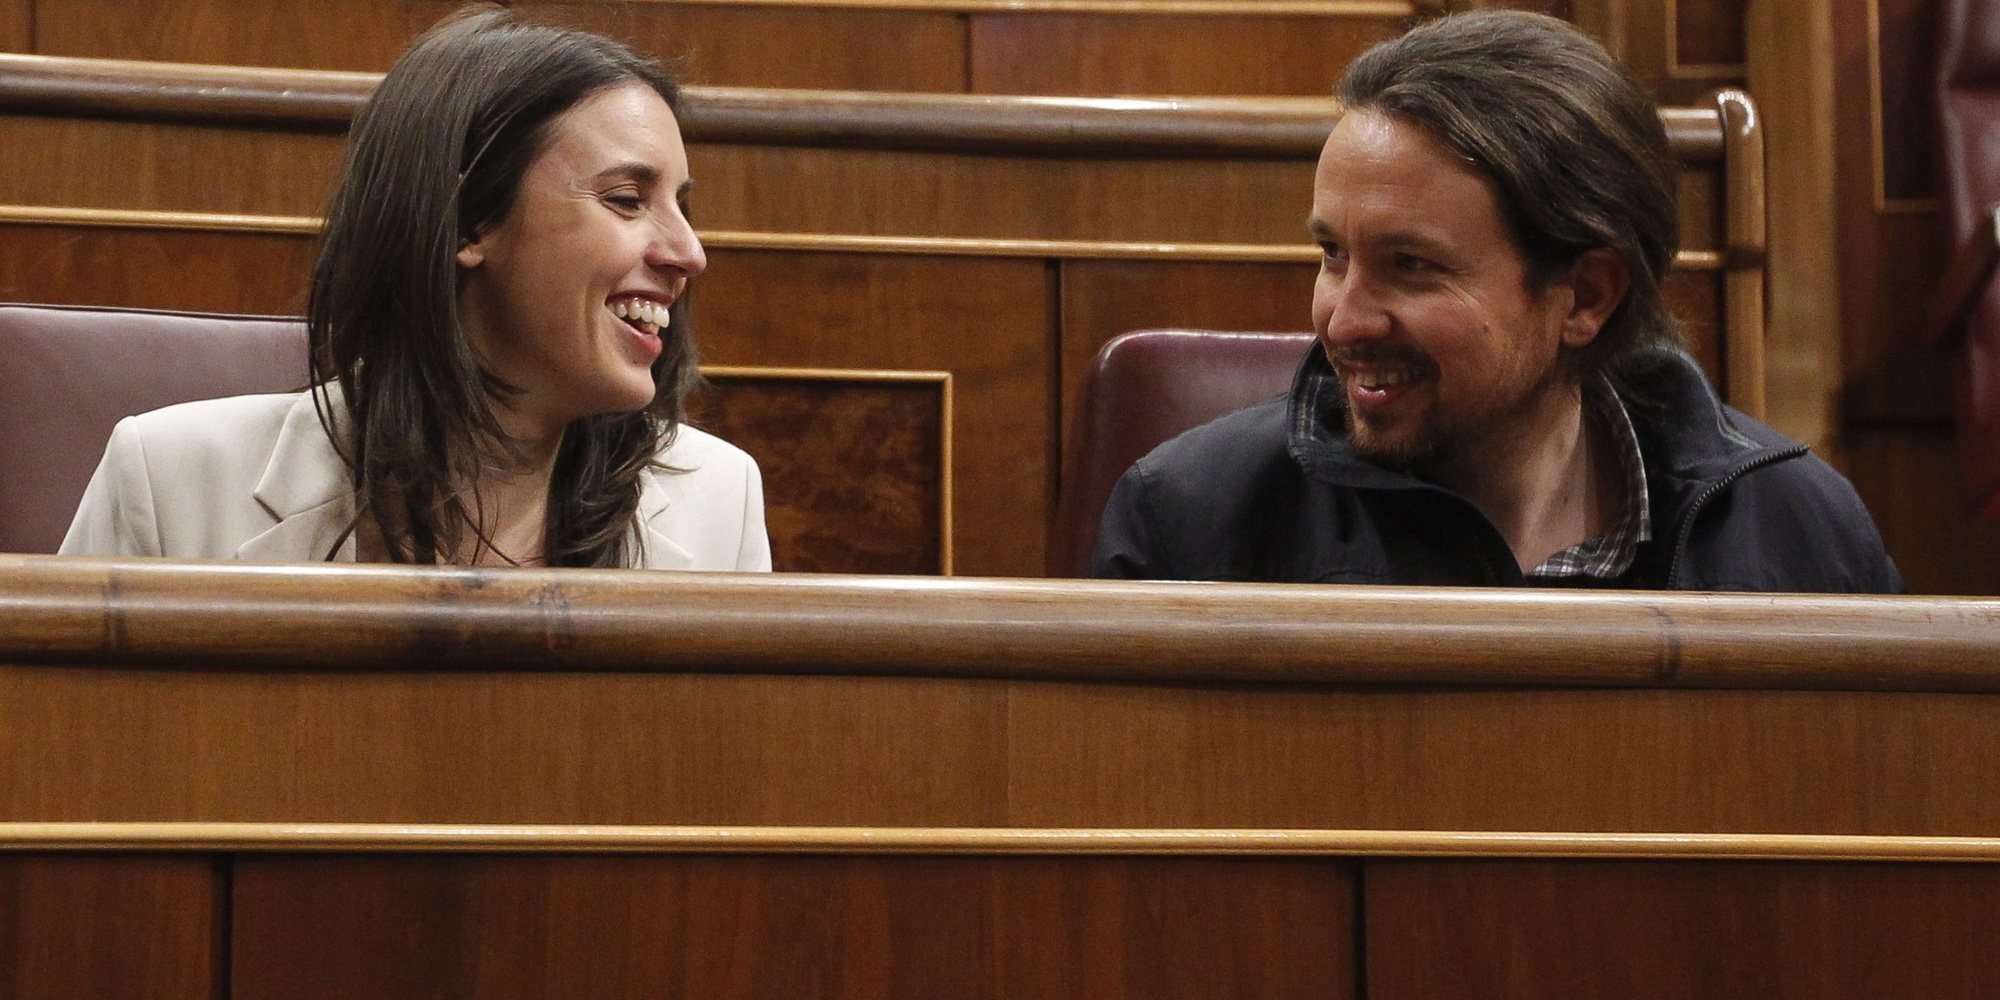 Pablo Iglesias e Irene Montero cancelan sus vacaciones por el acoso y el miedo a los escraches